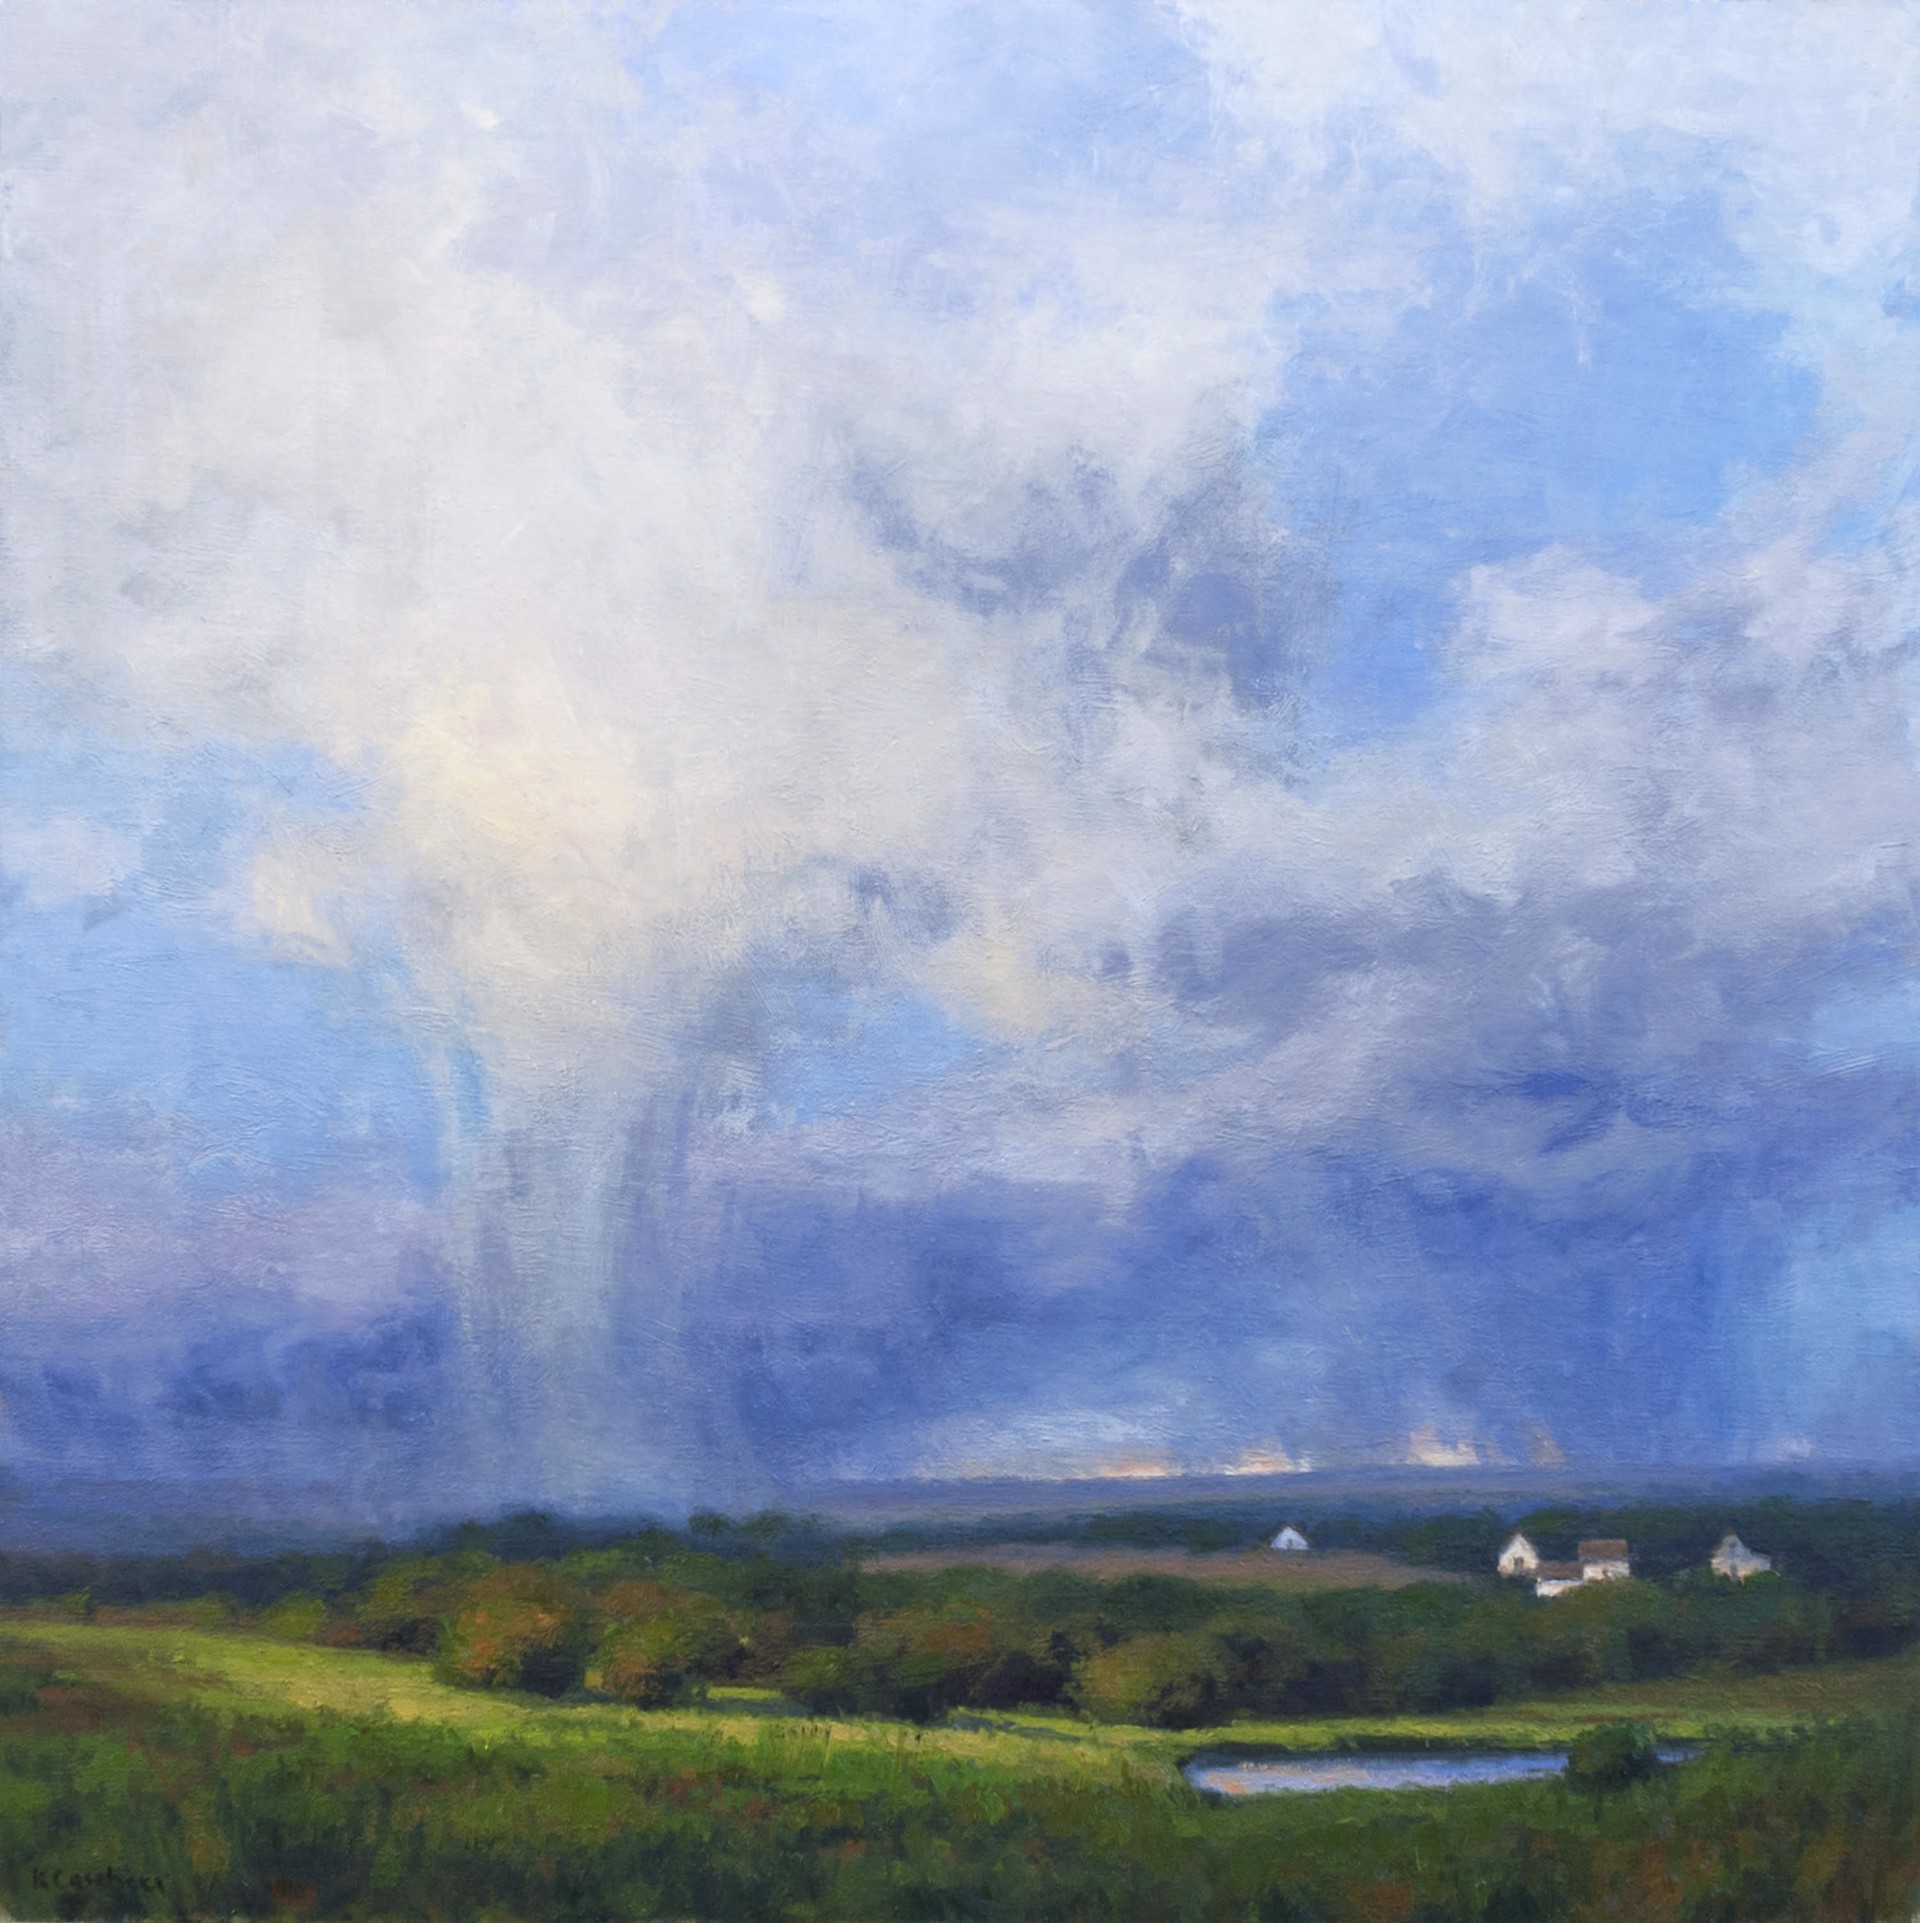 Virga over the Prairie by Kim Casebeer